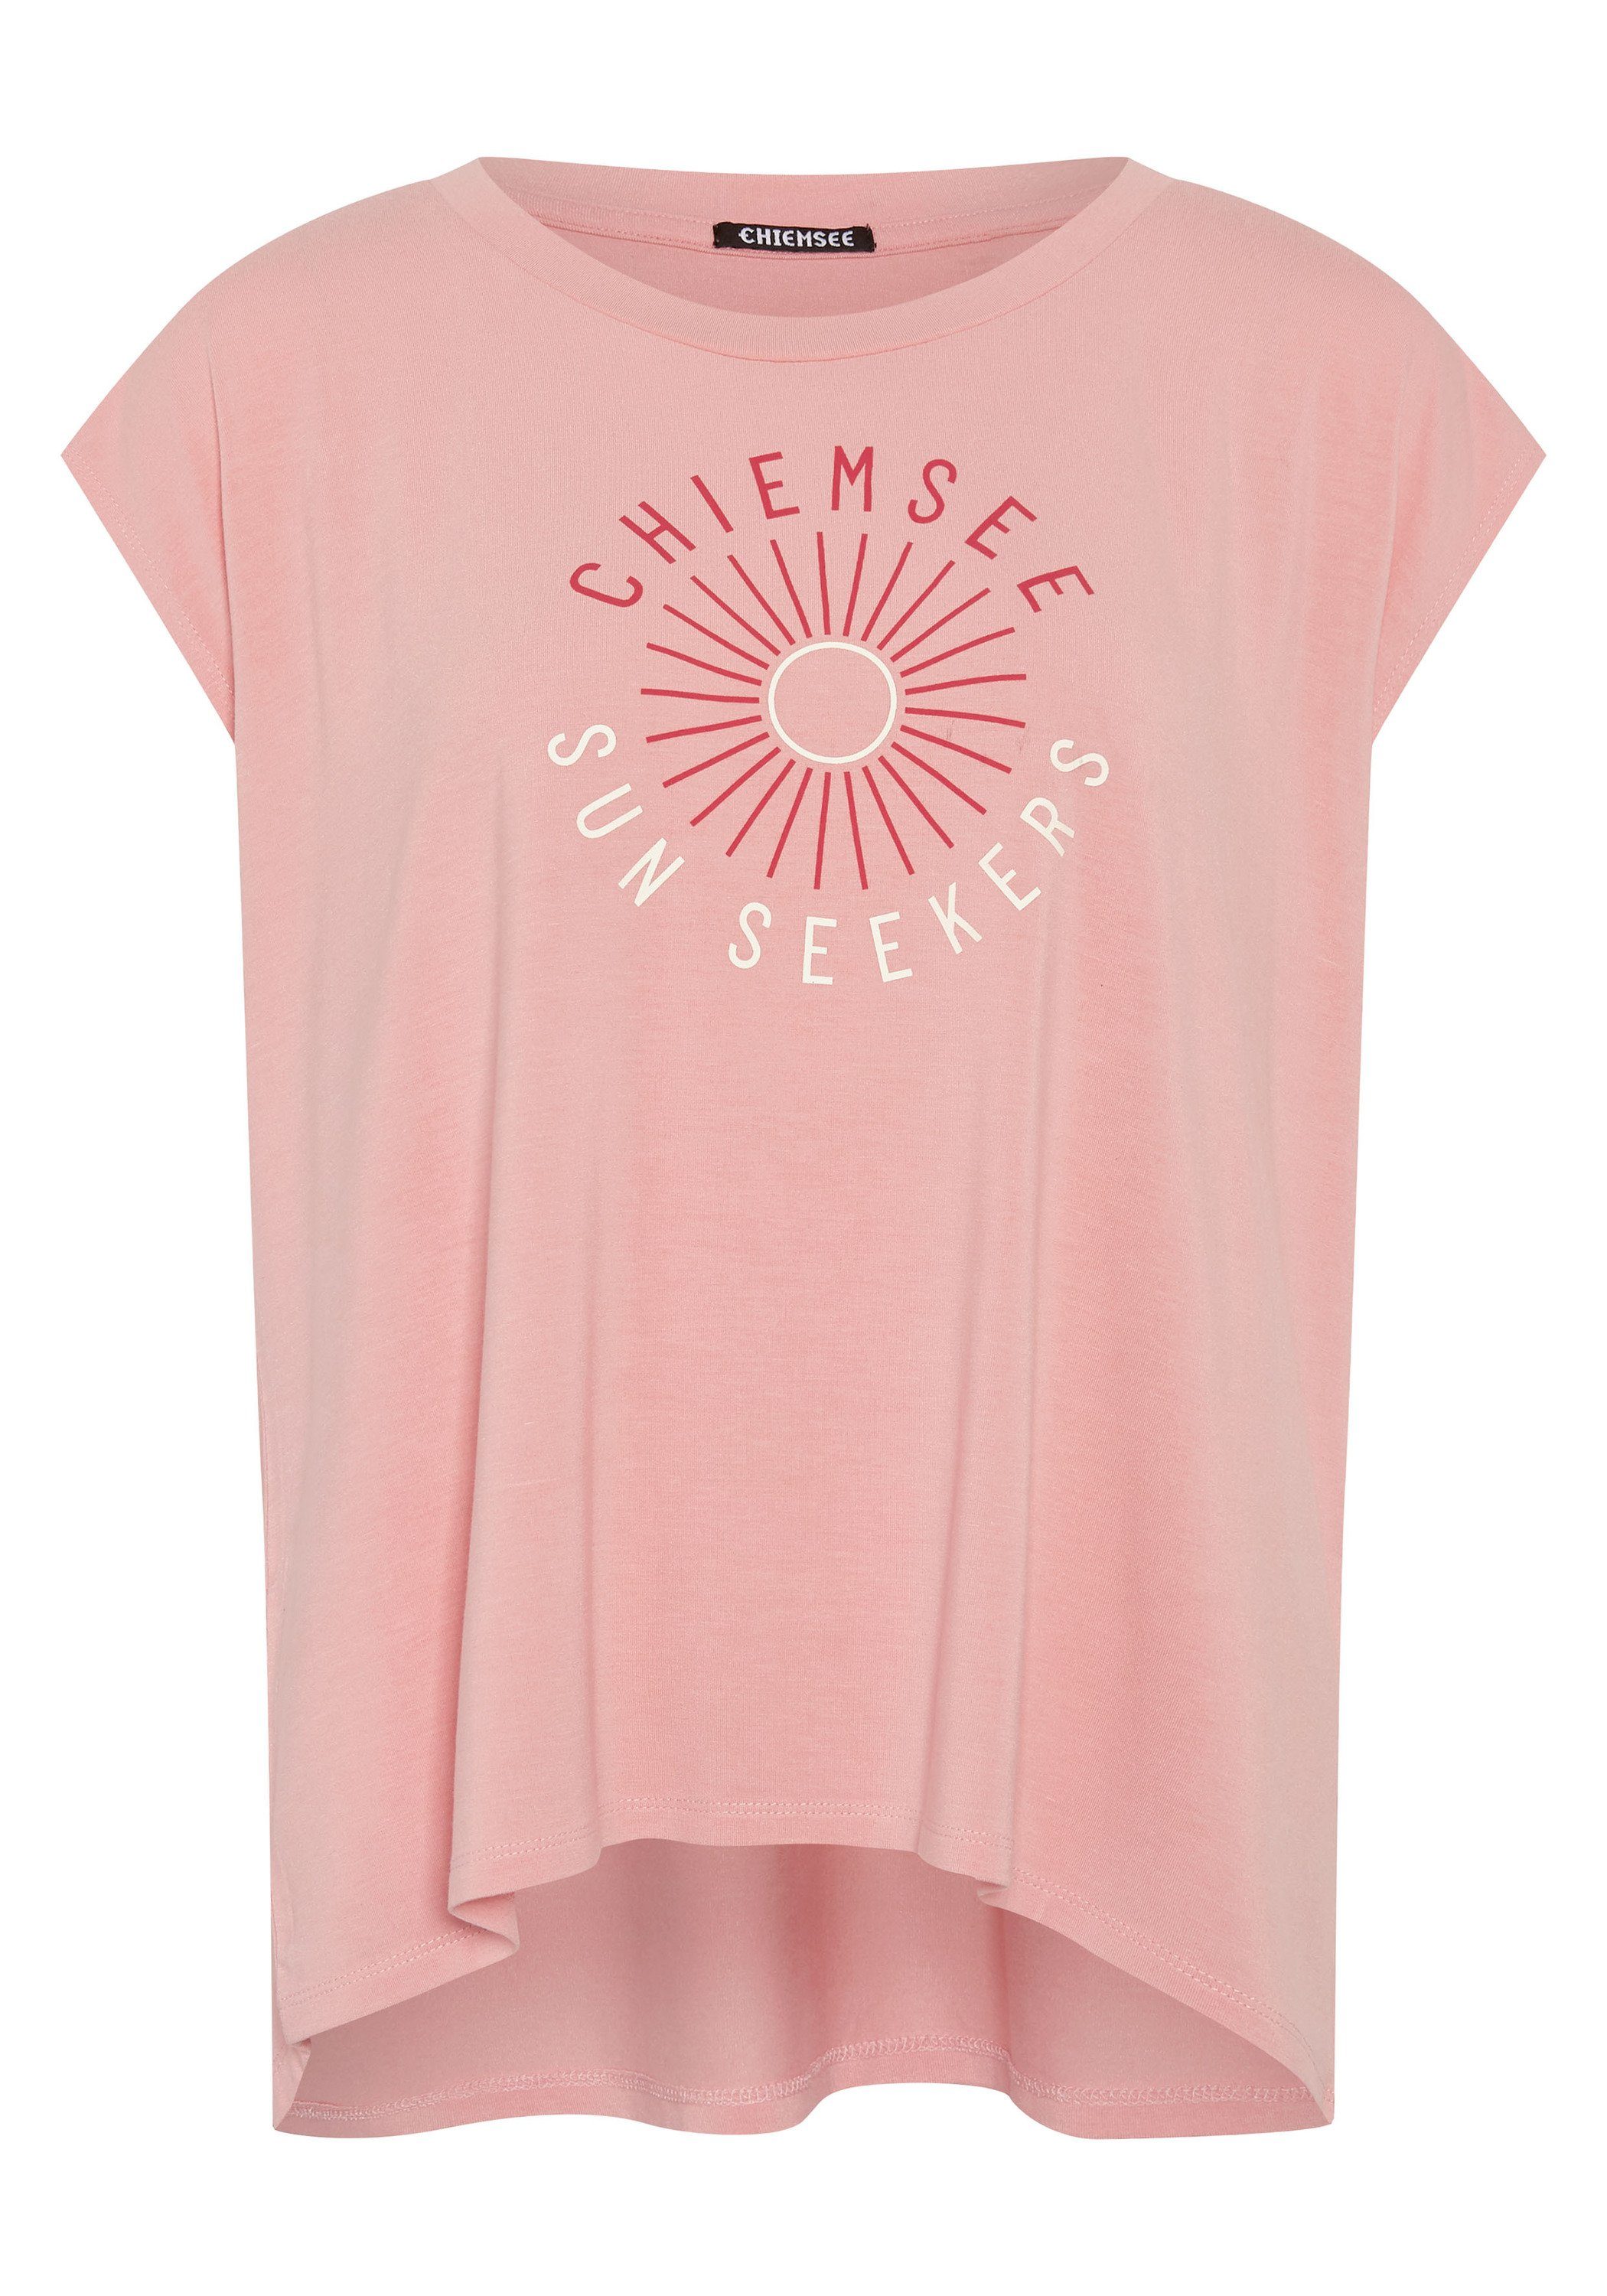 Print-Shirt 14-1521 Motiv T-Shirt Cream Chiemsee 1 mit Peaches und N' Schriftzug